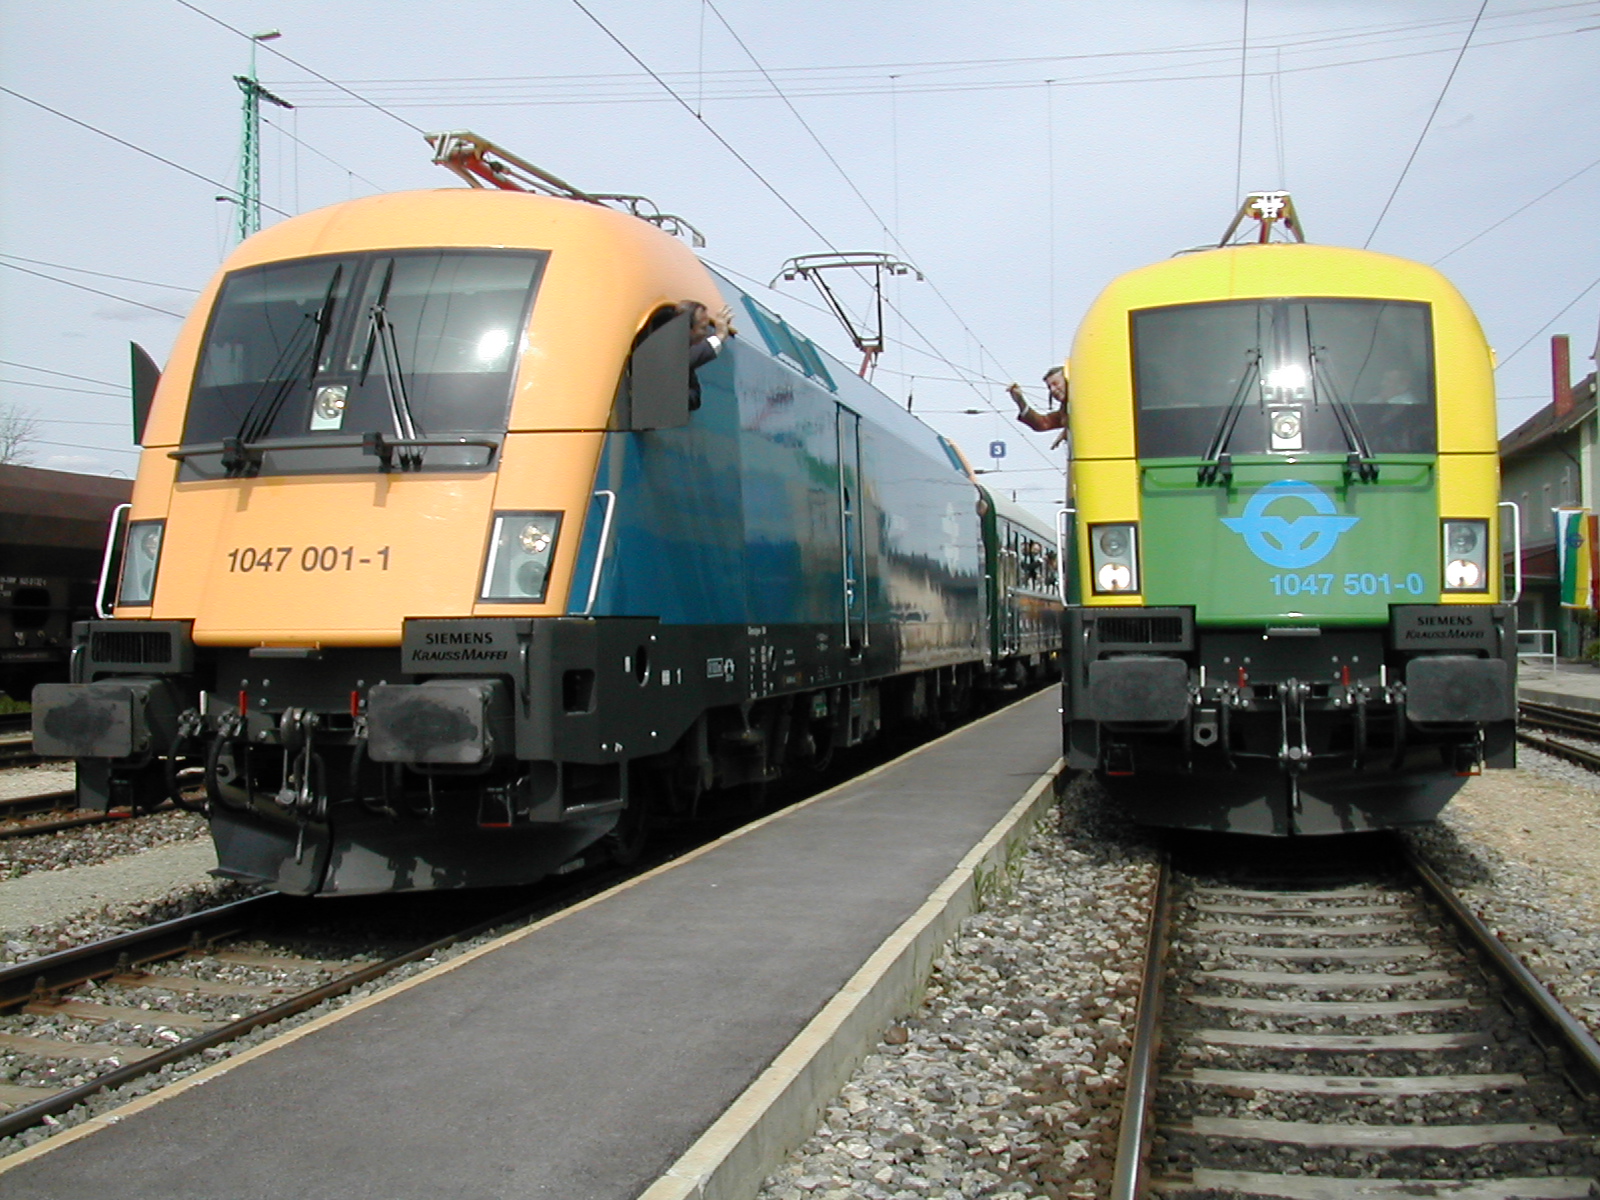 Kukelly Márton és Berényi János, a két vasútvállalat akkori vezérigazgatói üdvözlik egymást az új mozdonyokból<br>(fotó: Indóház-archív)